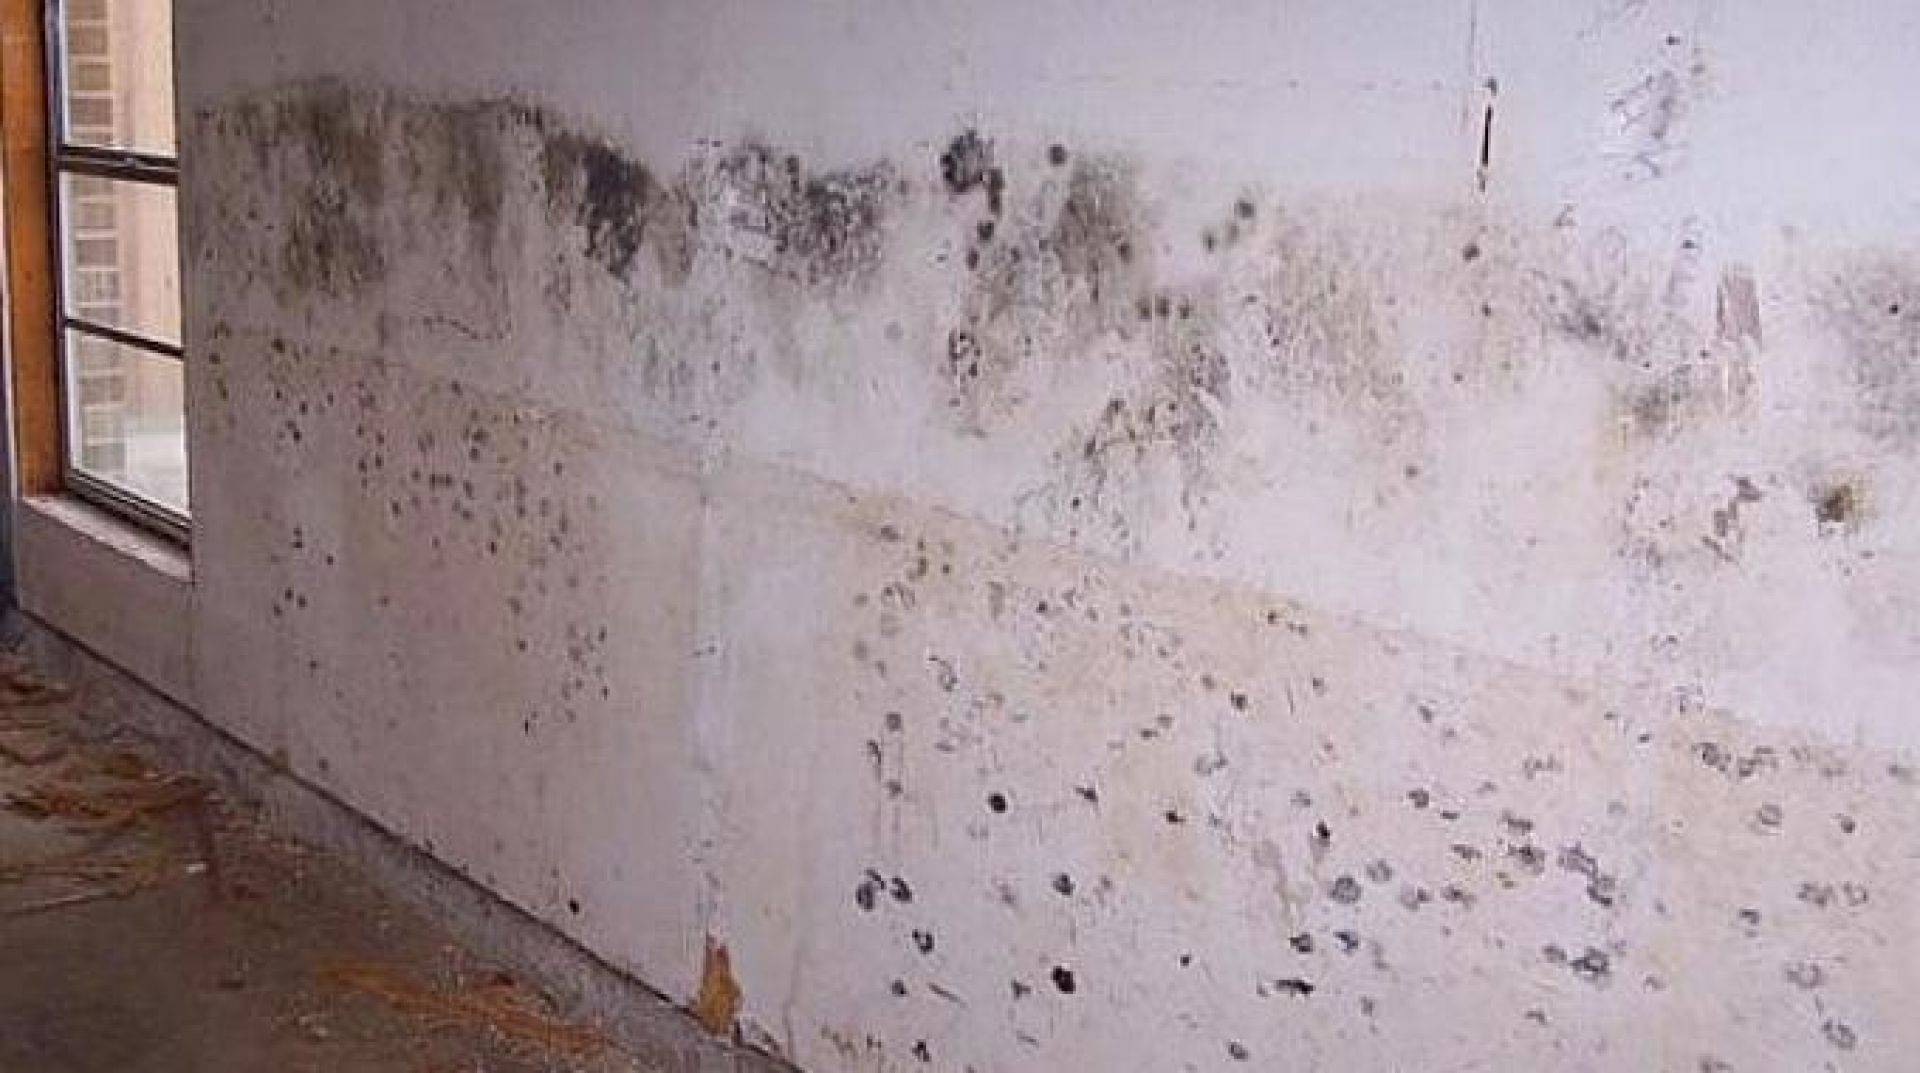 Полезные советы, как можно убрать всю плесень и грибок со стен в квартире